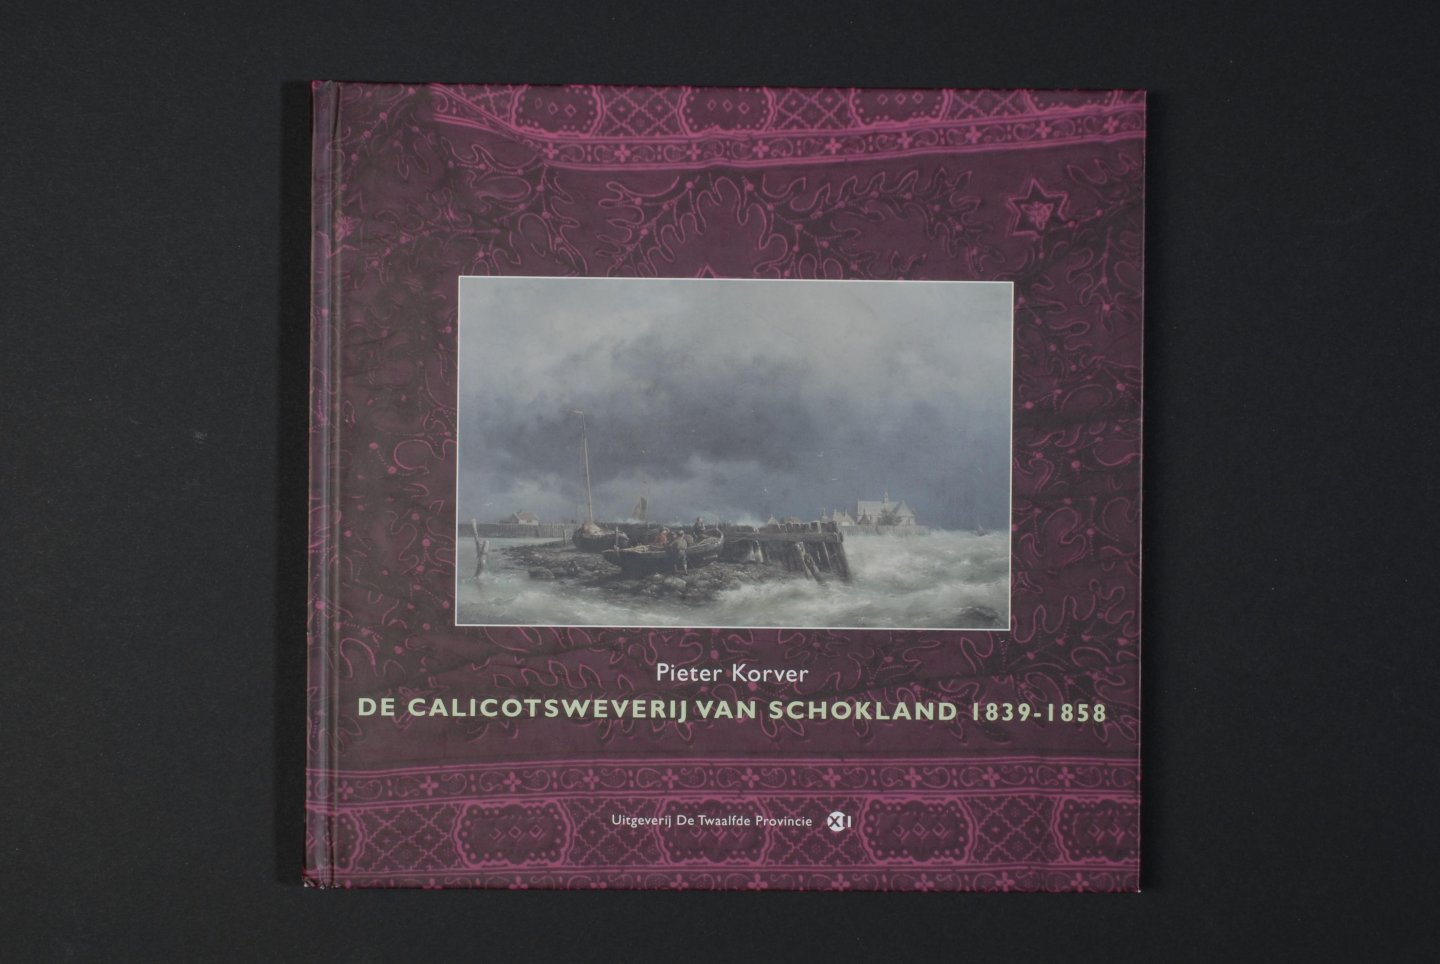 Pieter KORVER - De Calicotsweverij van Schokland 1839-1858.